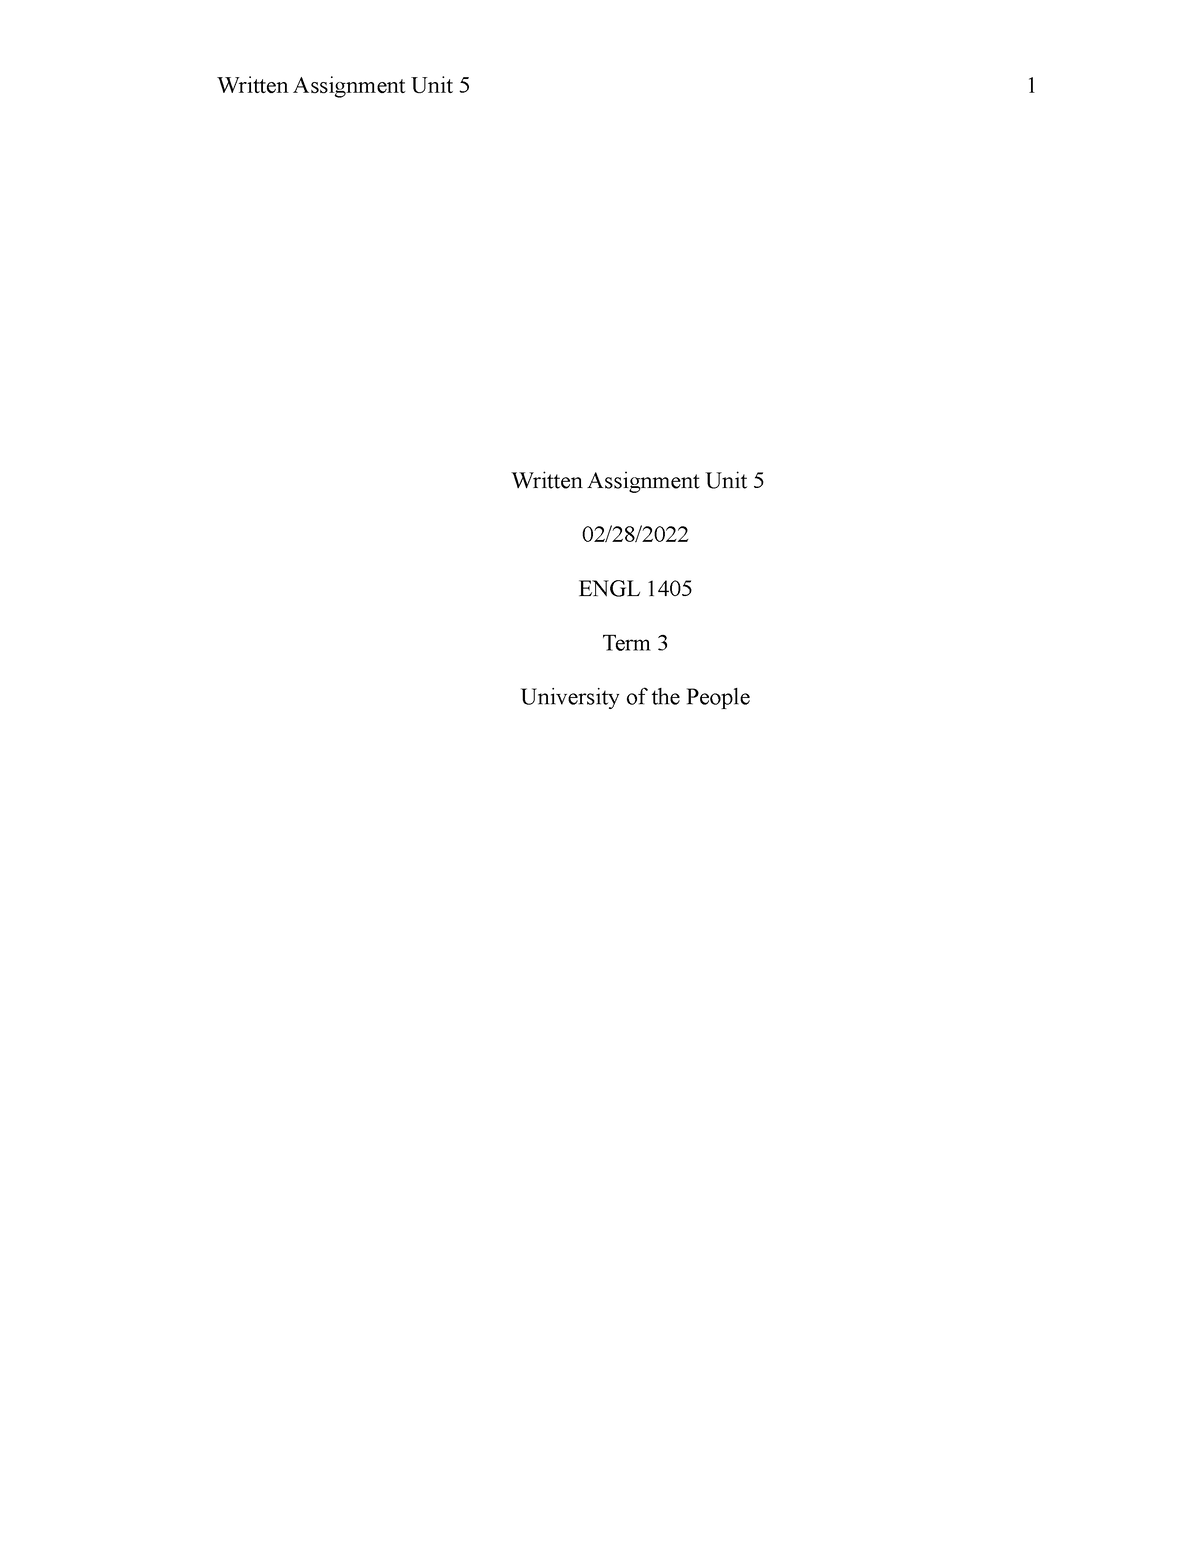 ENGL 1405 Written Assignment Unit 5 - Human Behavior Organization - Studocu